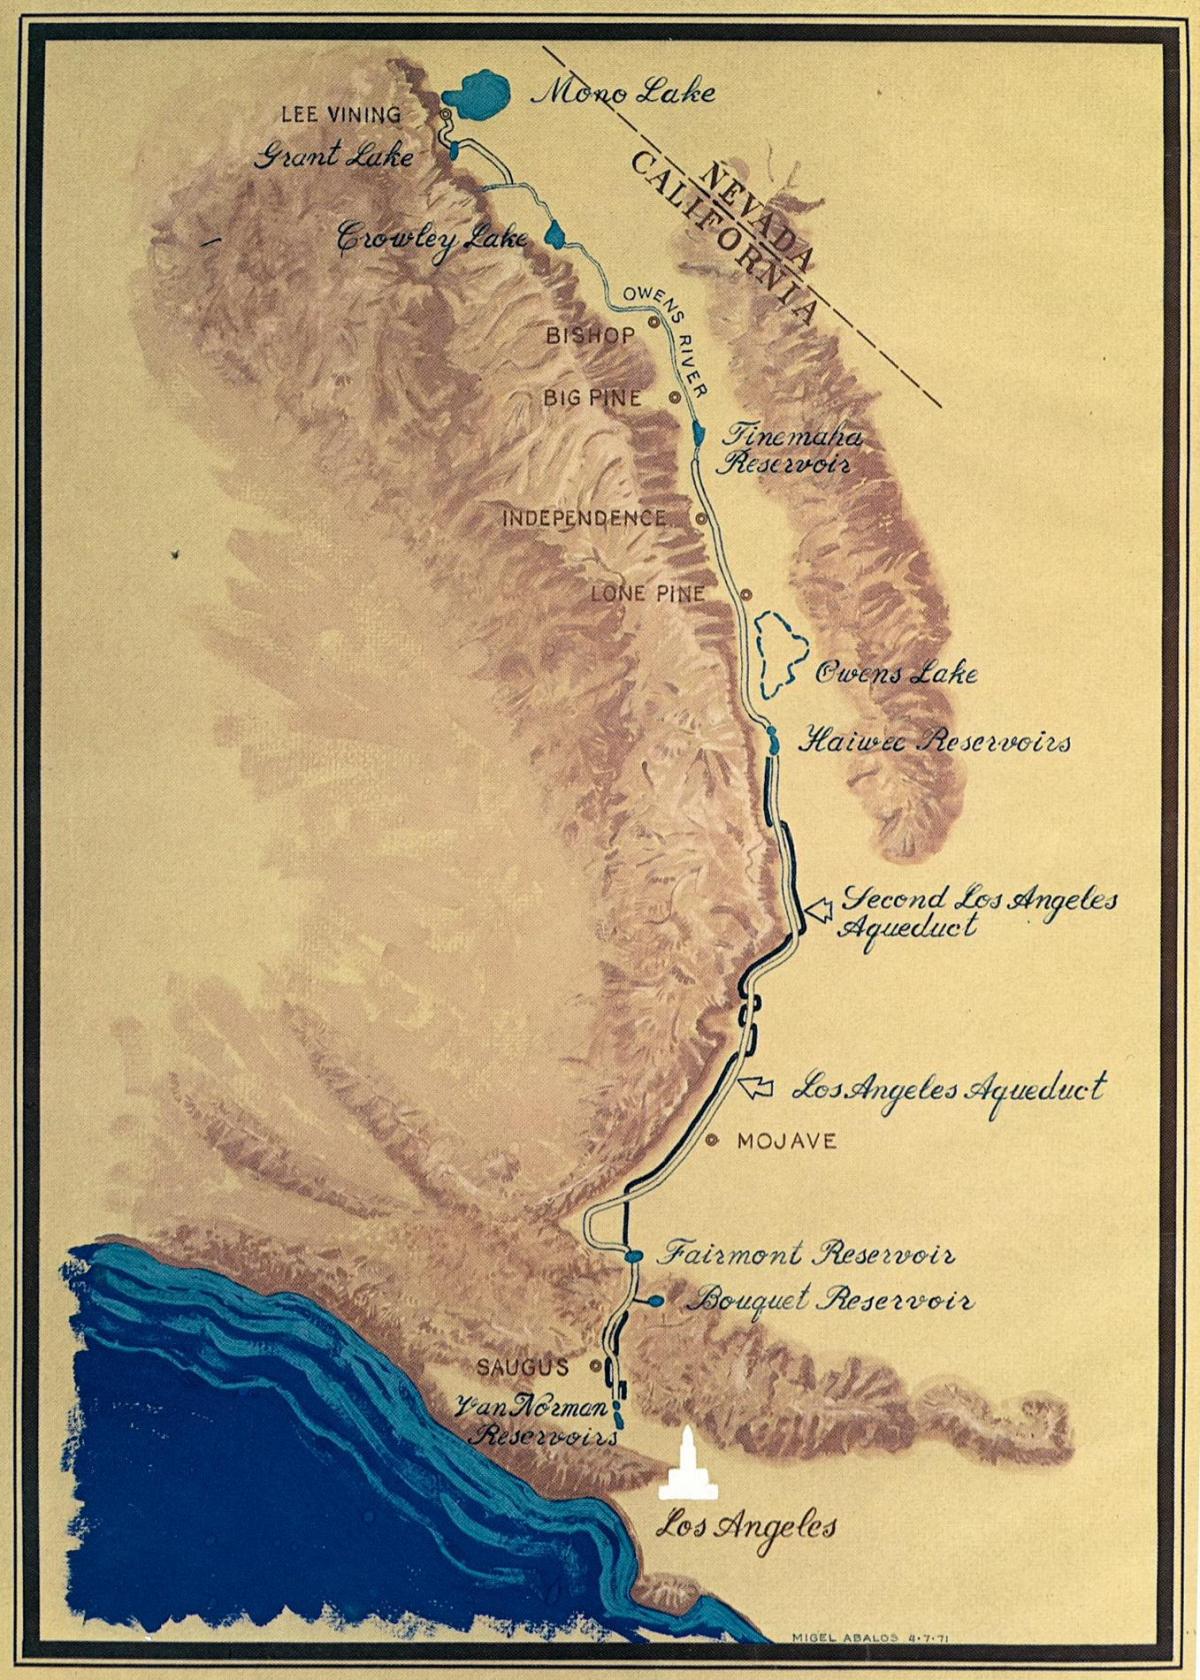 mappa di Los Angeles acquedotto